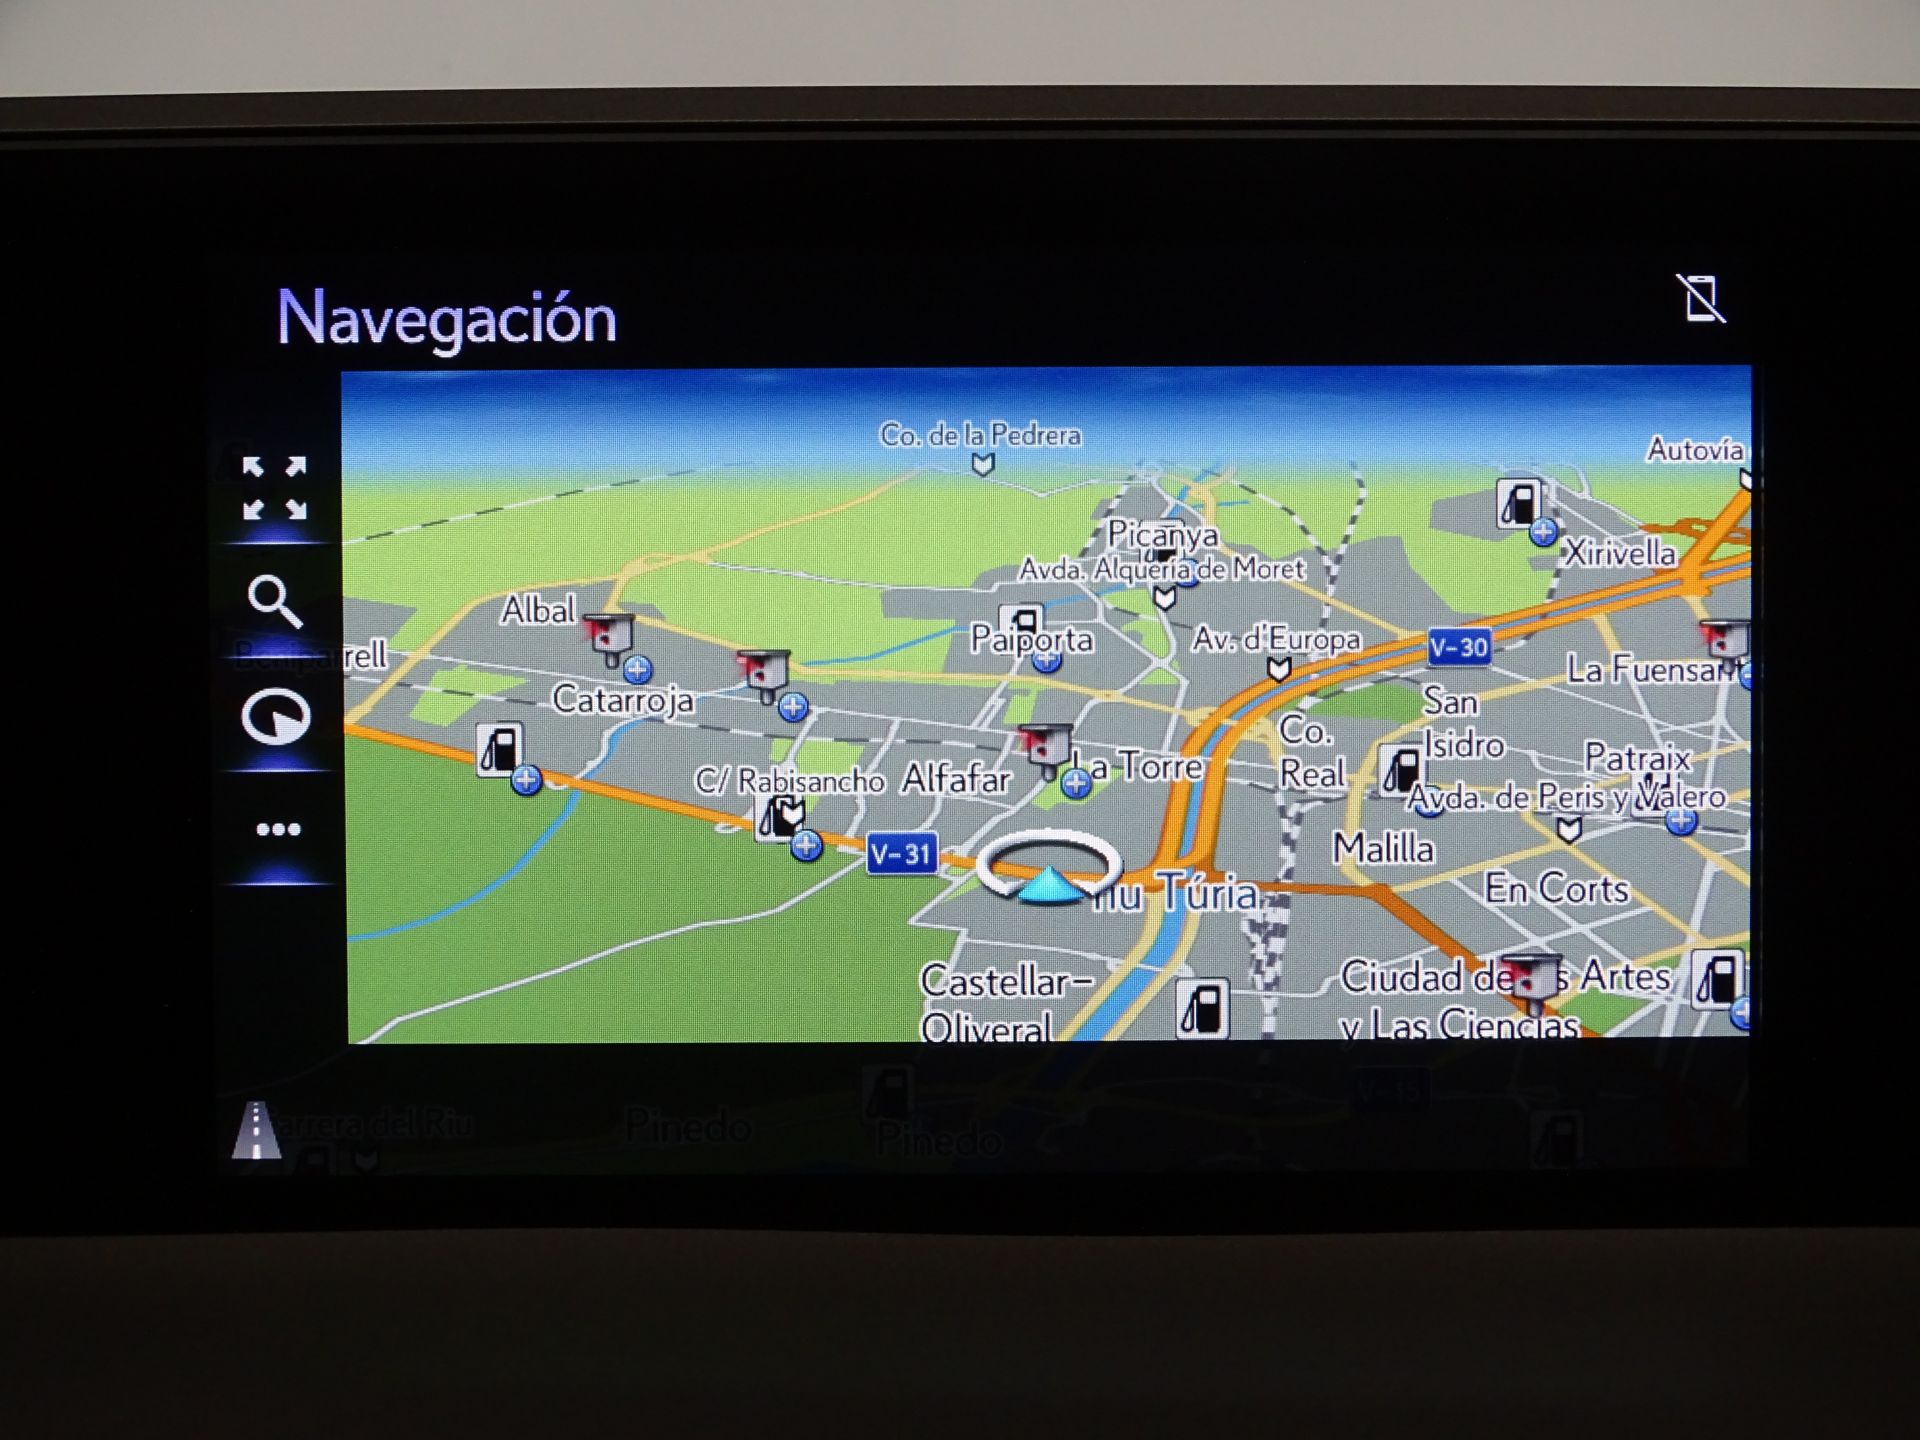 Lexus UX 2.0 250h Business Navigation